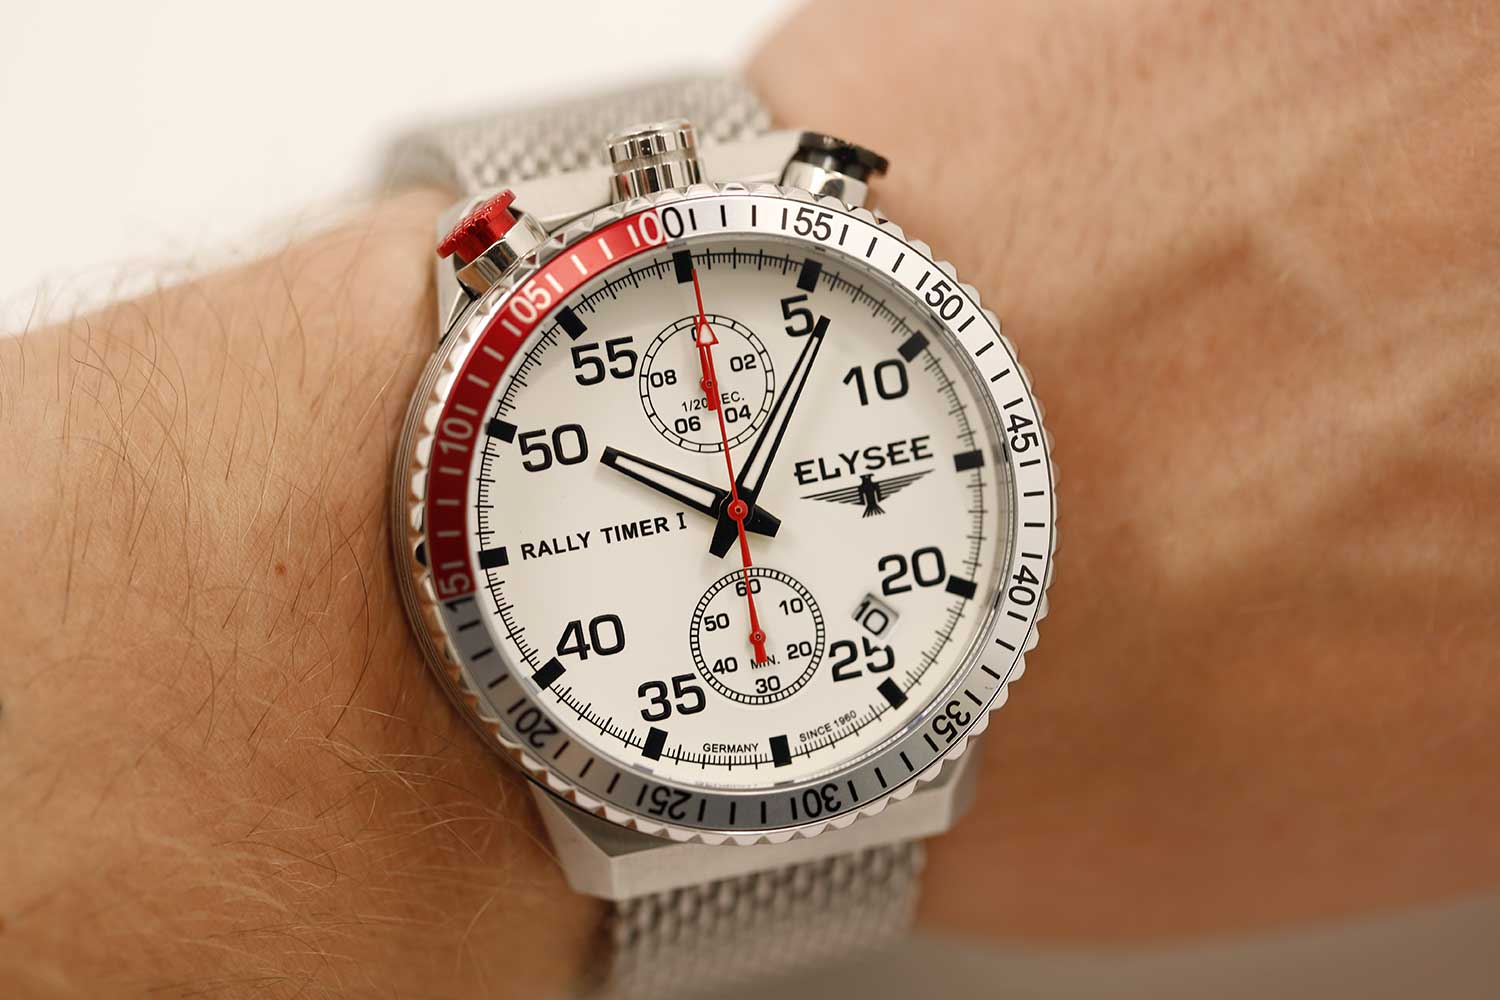 Наручные часы Elysee (Элиси) Rally Timer I — купить на официальном сайте  AllTime.ru, фото и цены в каталоге интернет-магазина